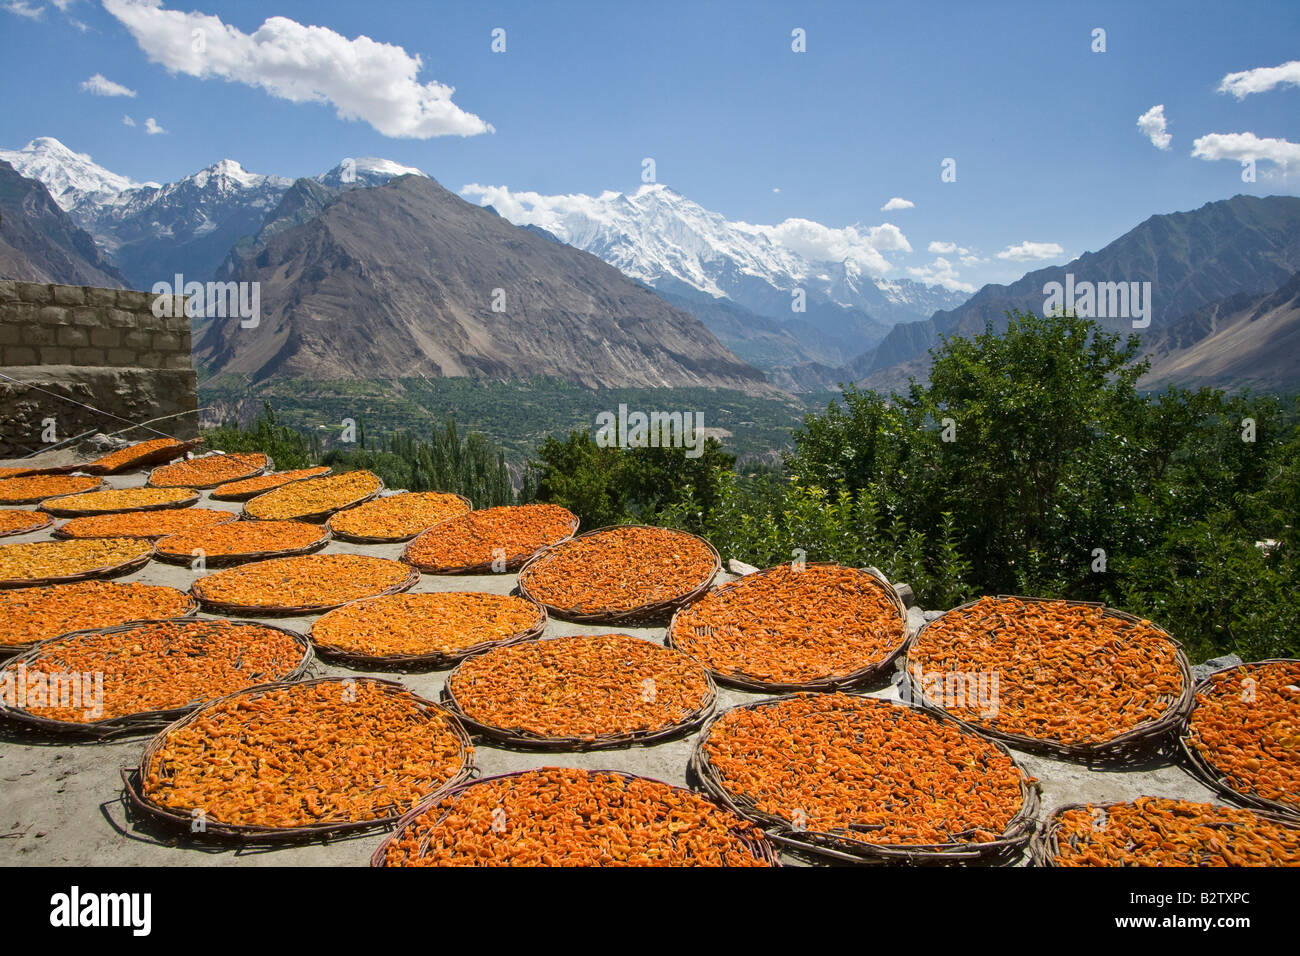 Dans le séchage des abricots dans la vallée de Hunza au nord du Pakistan Karimabad Banque D'Images